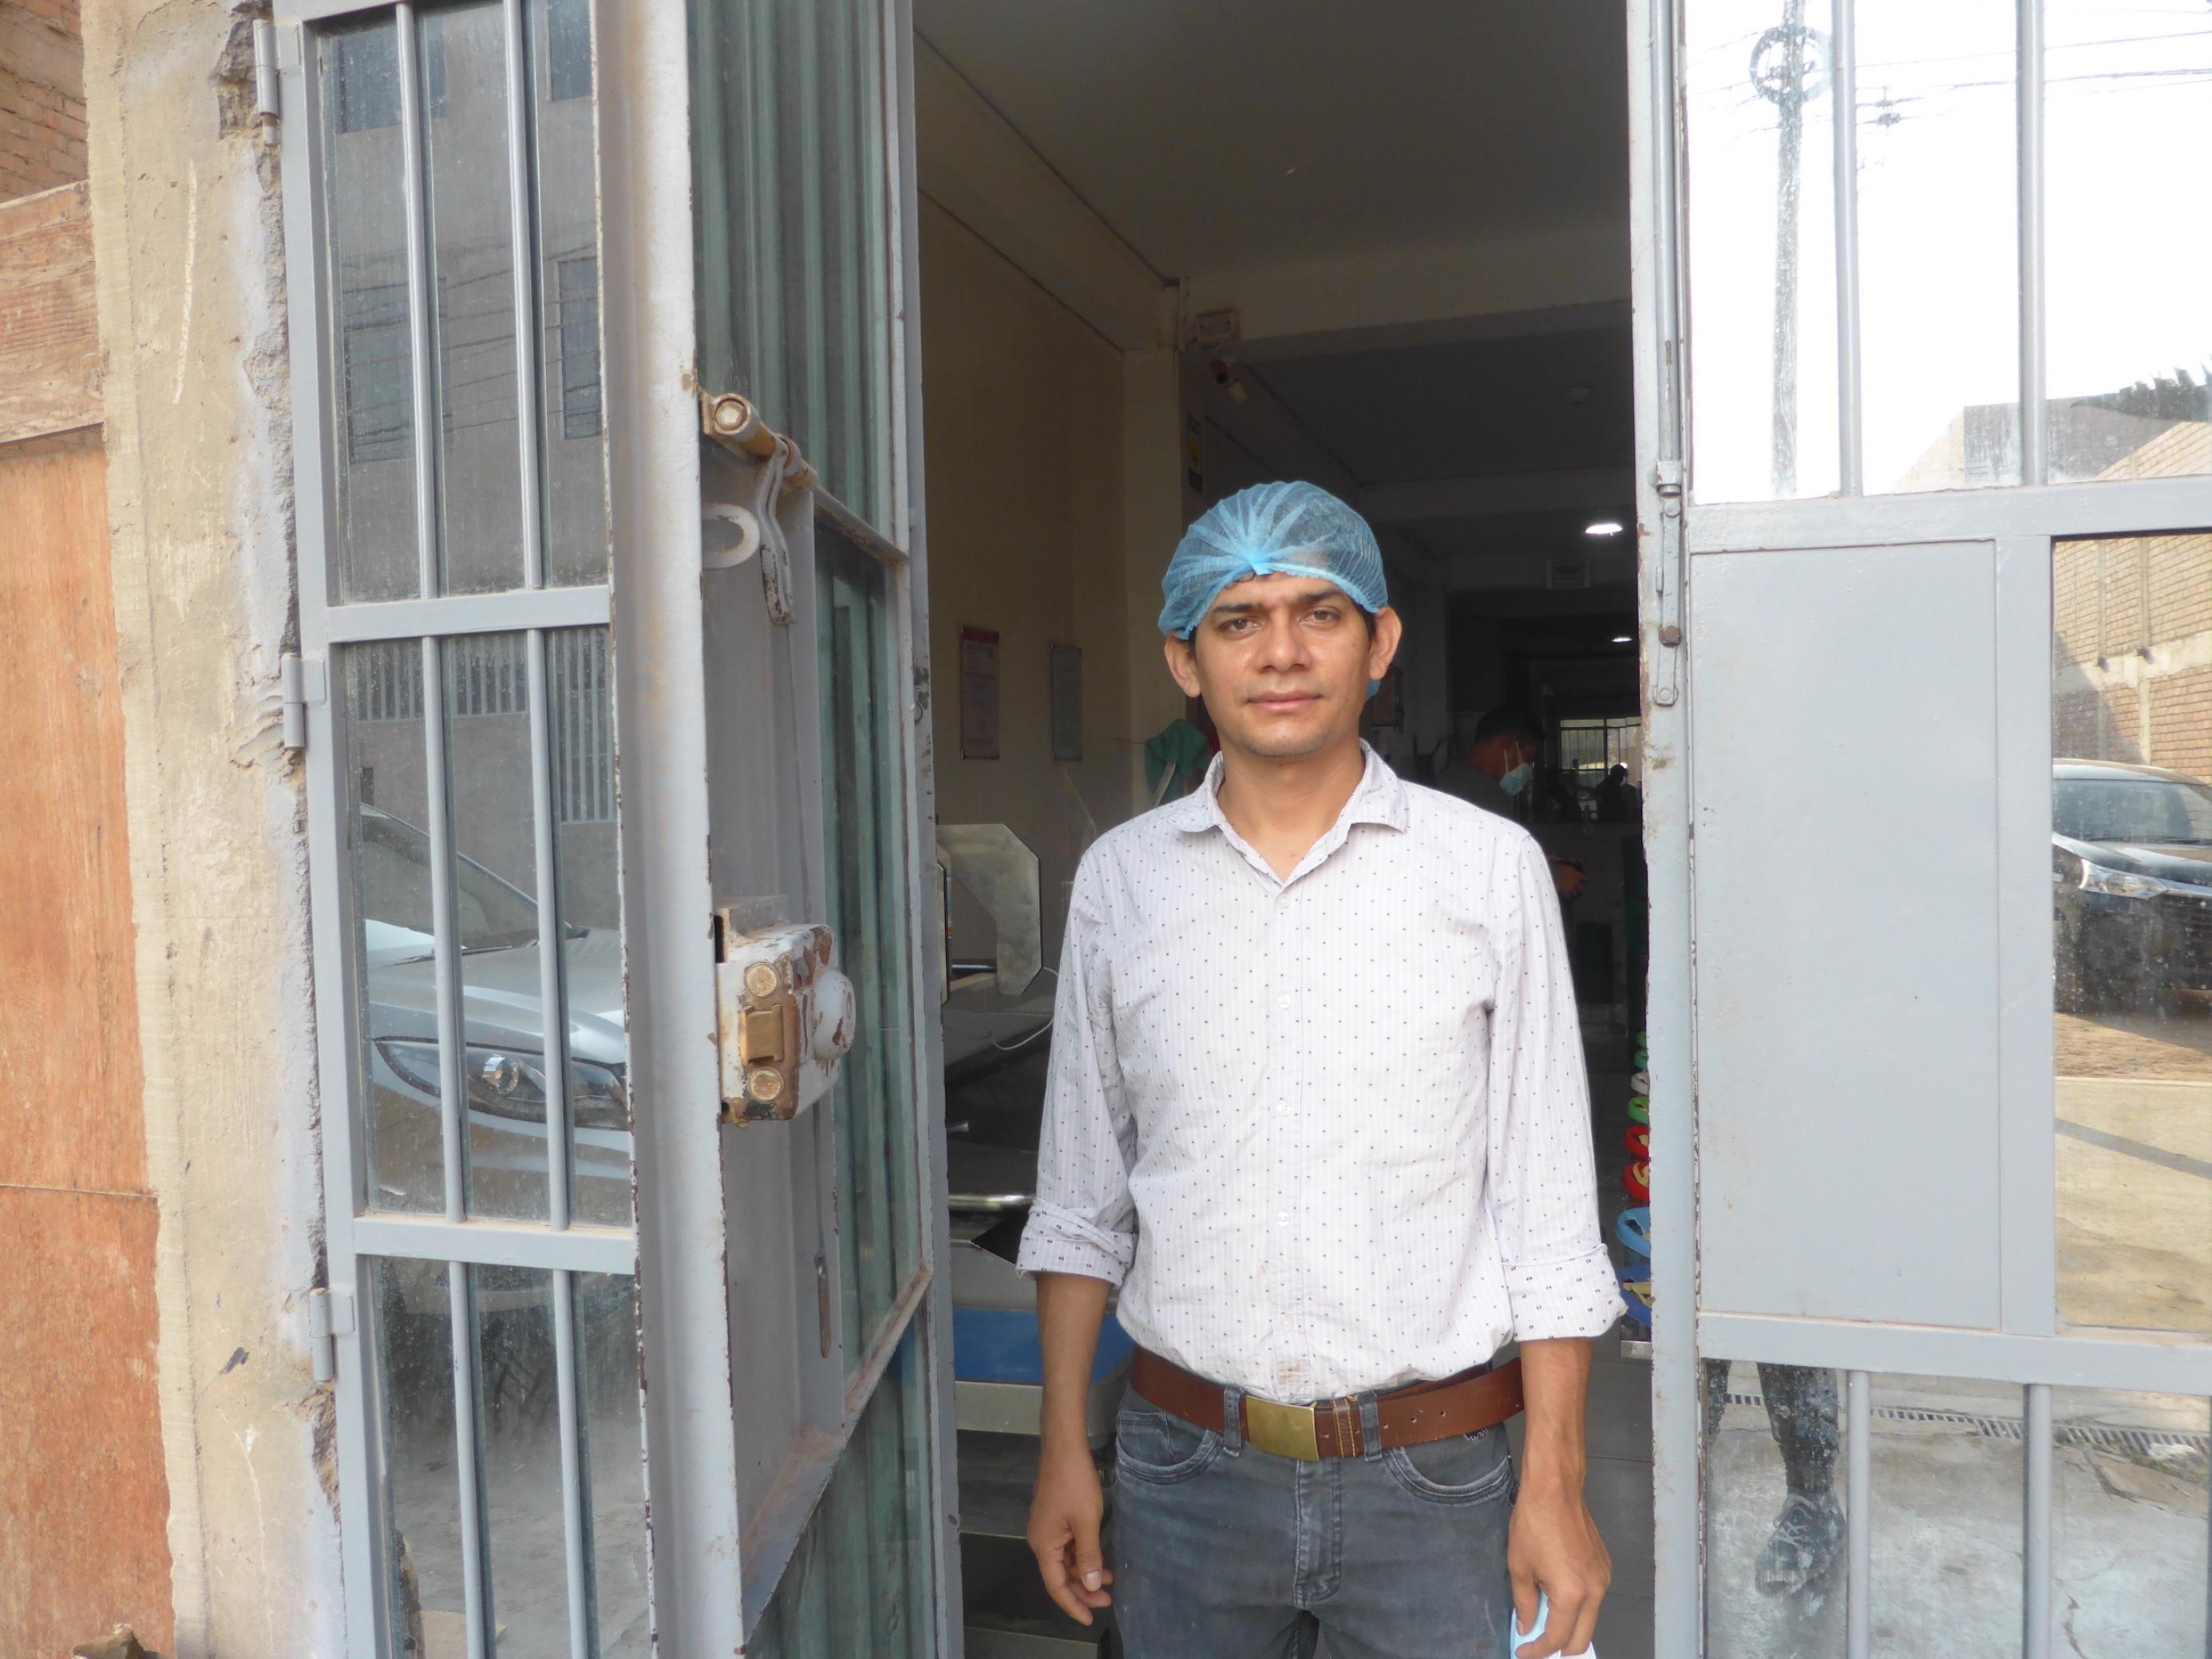 Mann in Jeans, Hemd und Haarnetz steht im Eingang einer mit Mtealltoren gesicherten Fabrikhalle.